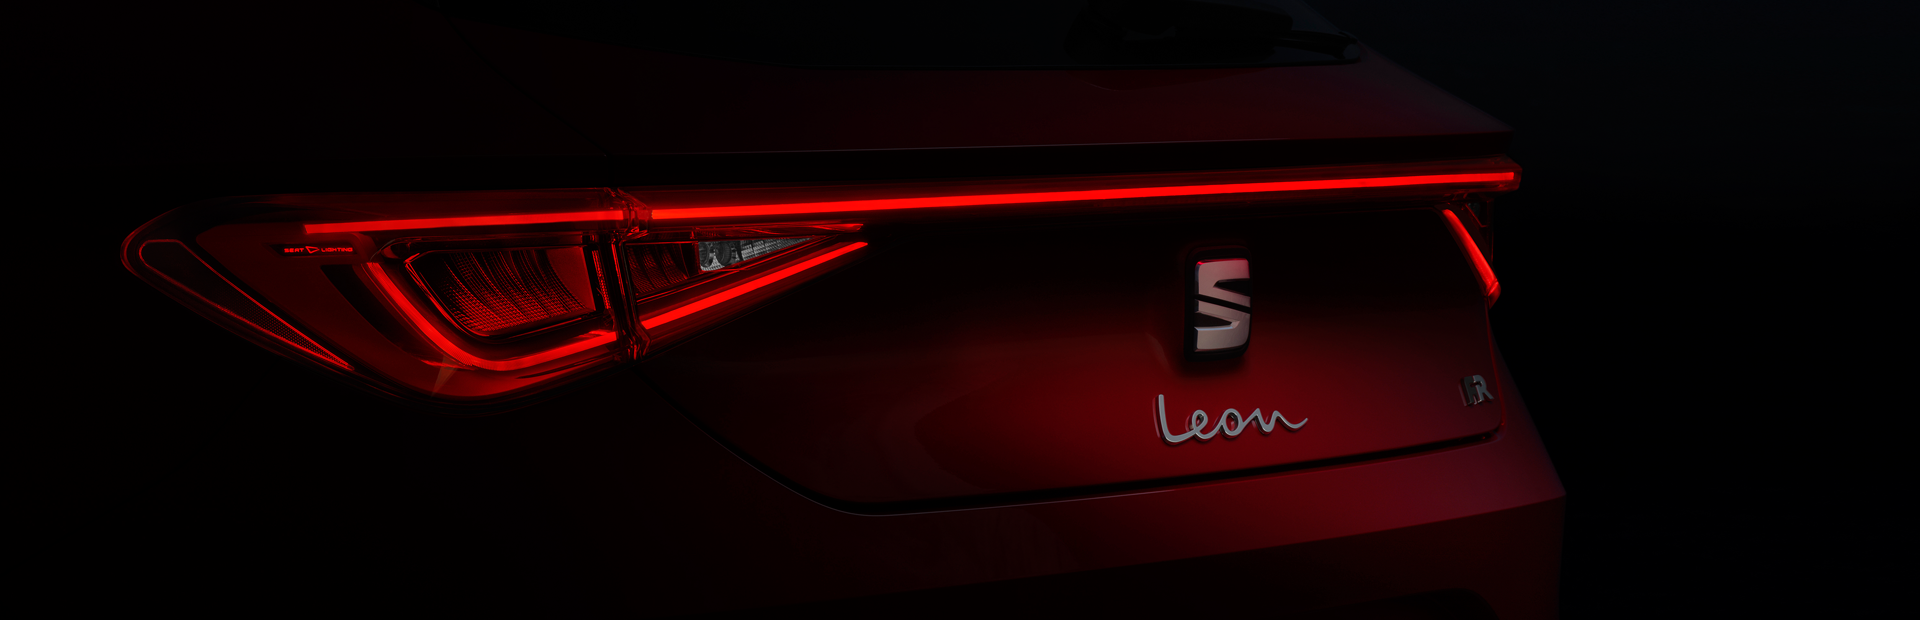 SEAT Leon 4. generacji wprowadza do segmentu nową estetykę